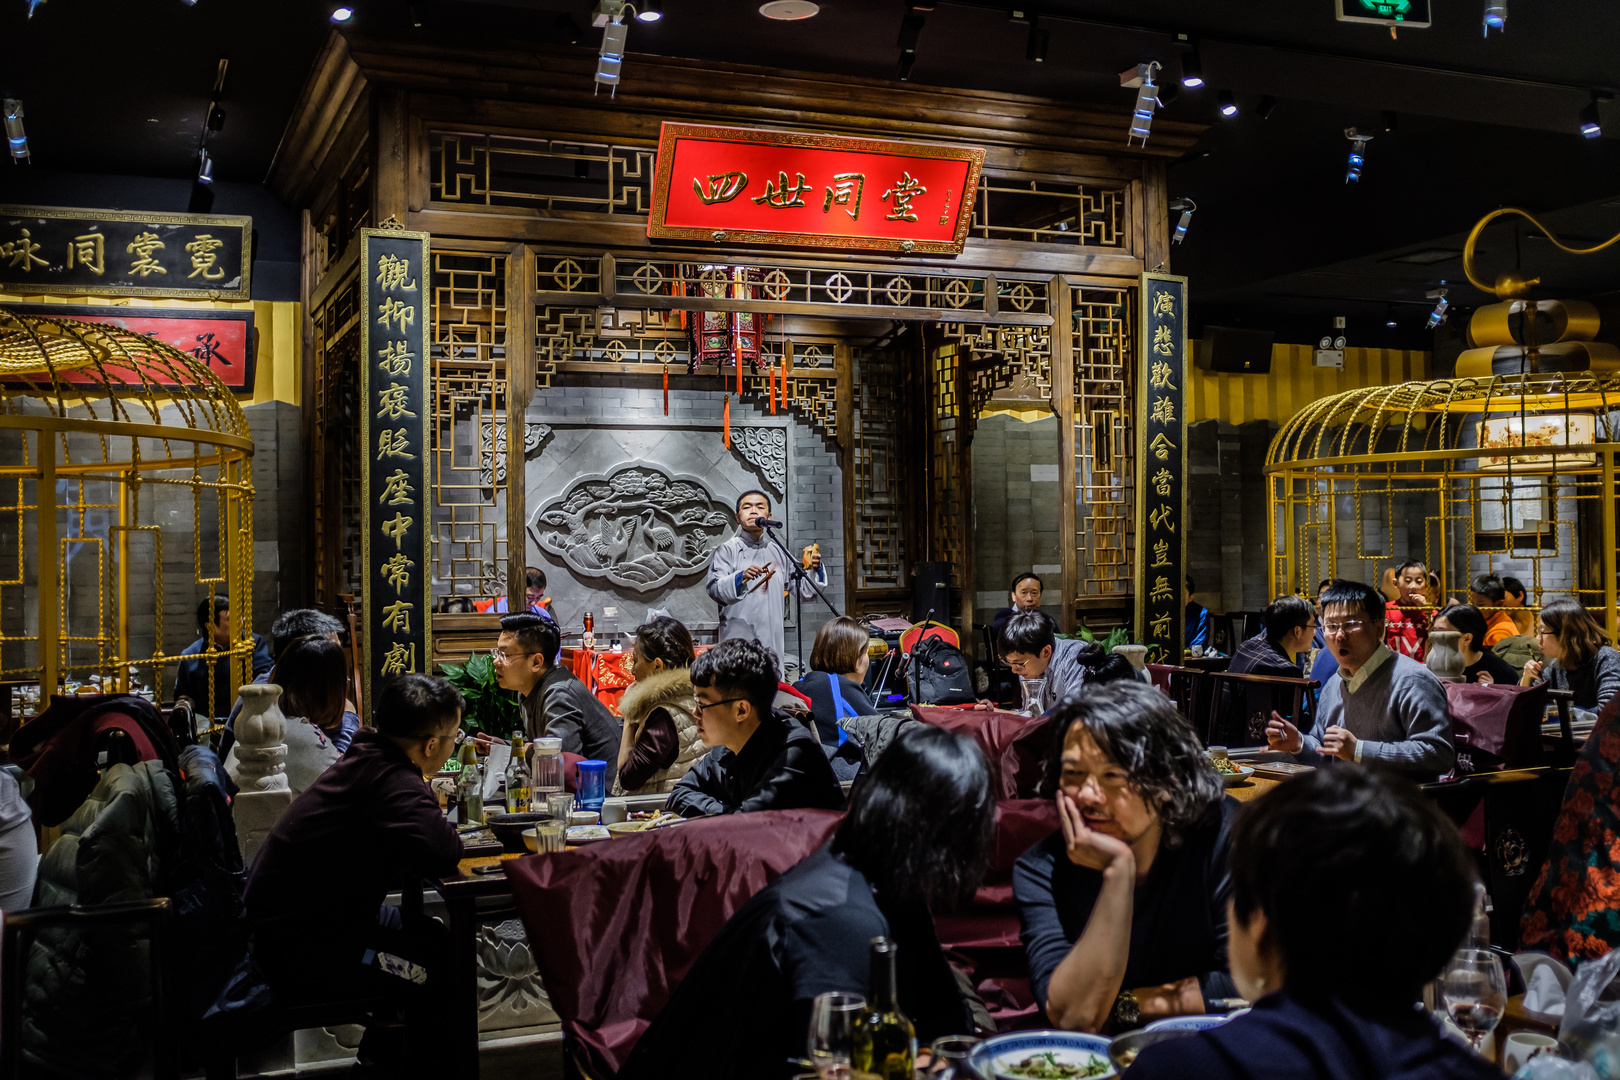 Restaurant in Beijing